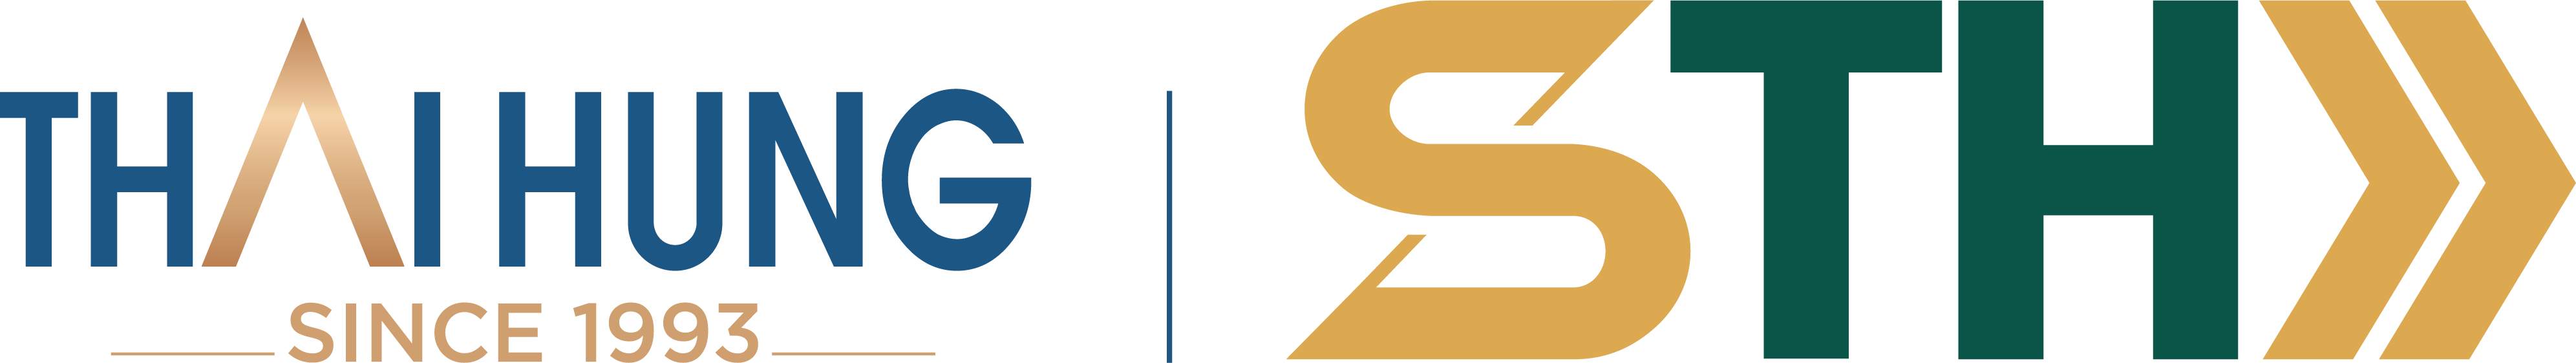 logo Hệ thống bán lẻ STH